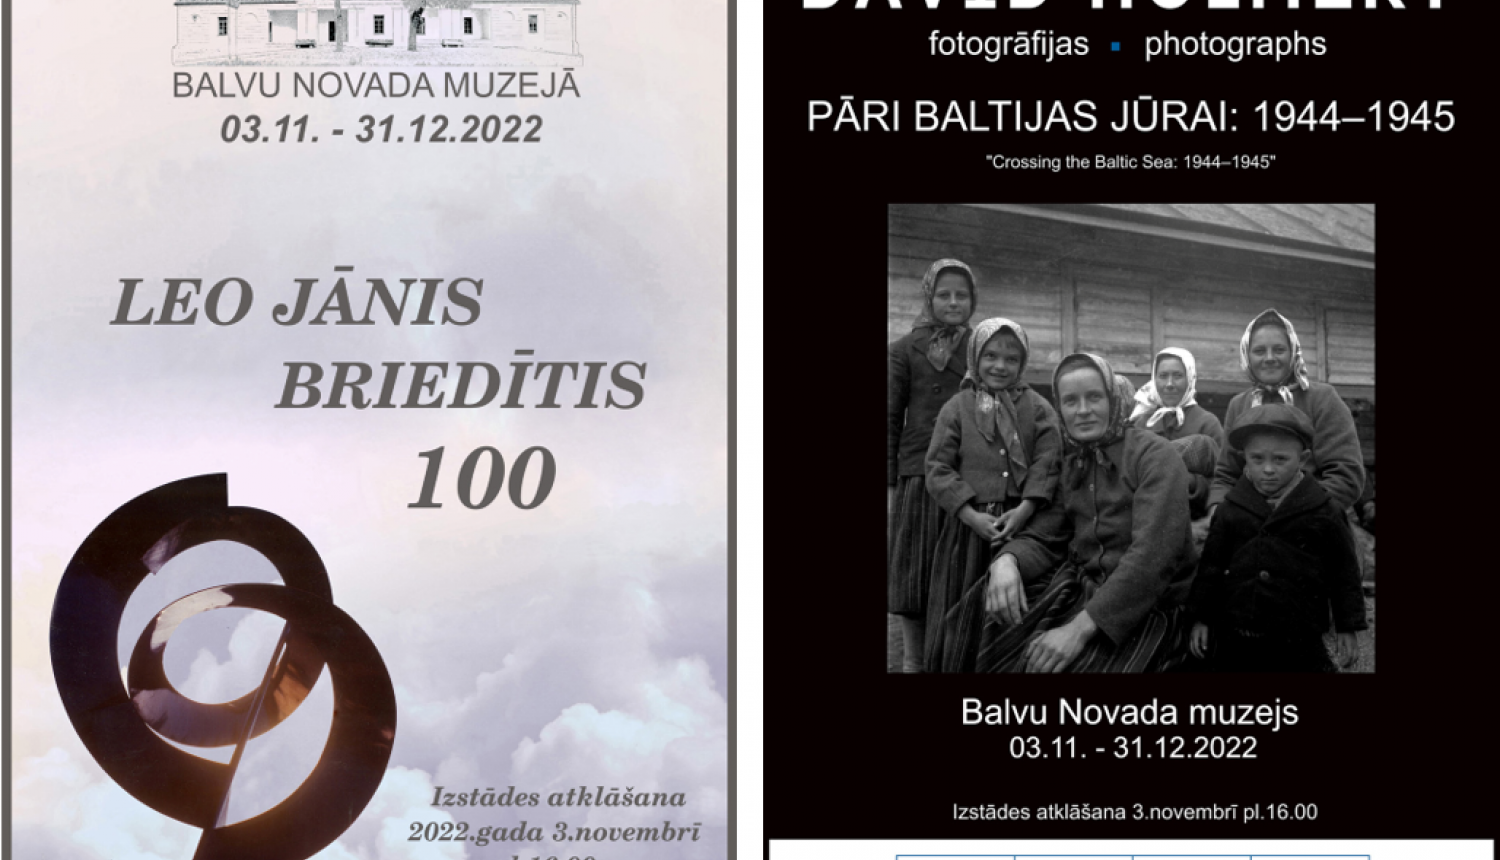 3.novembrī Balvu Novada muzejā tiks atklātas divas izstādes